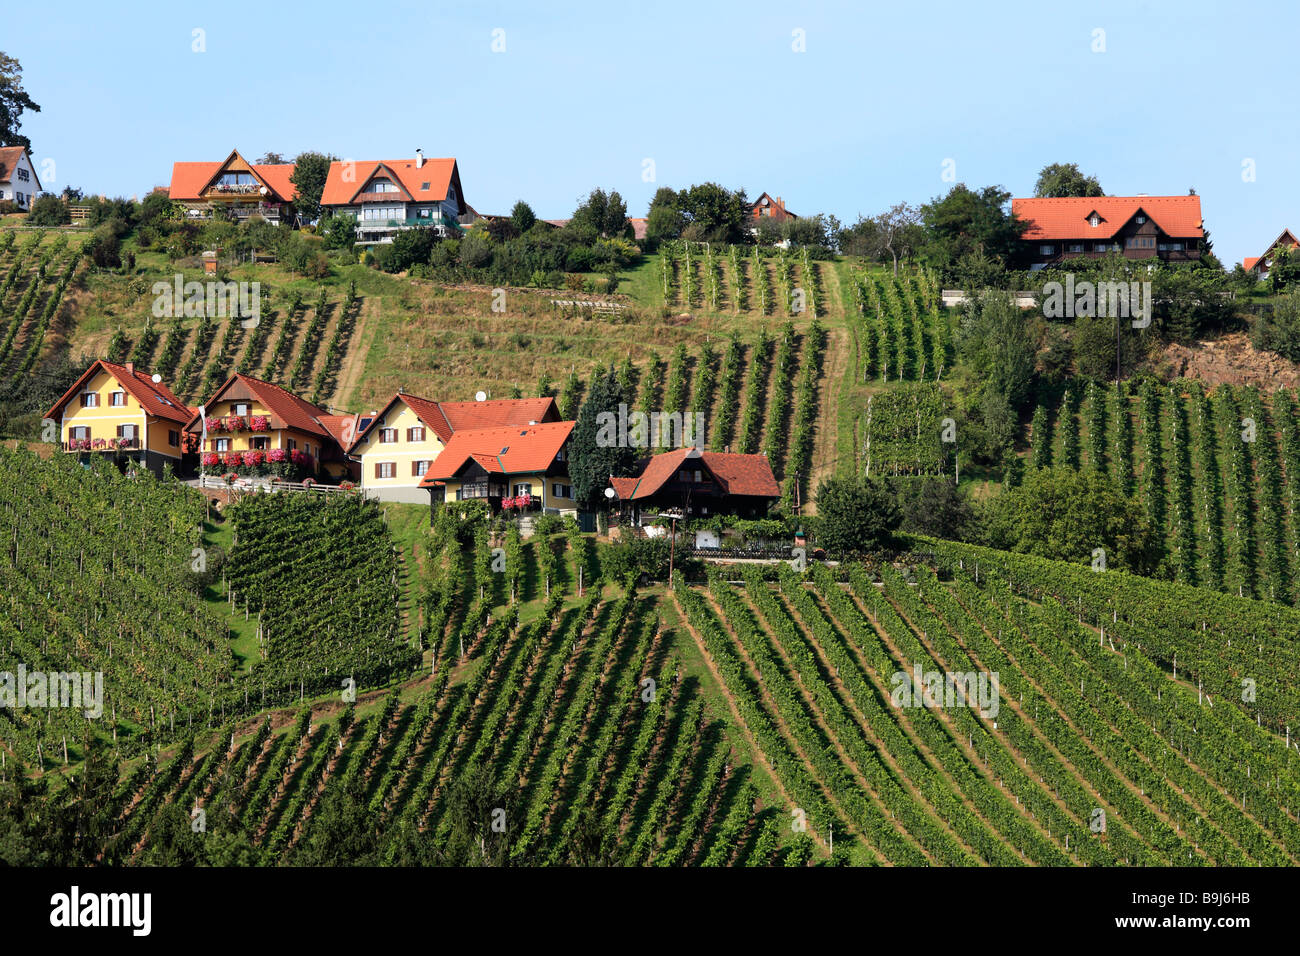 Vine yards on Schilcher Weinstrasse, Steinreib near Stainz, Styria, Austria, Europe Stock Photo